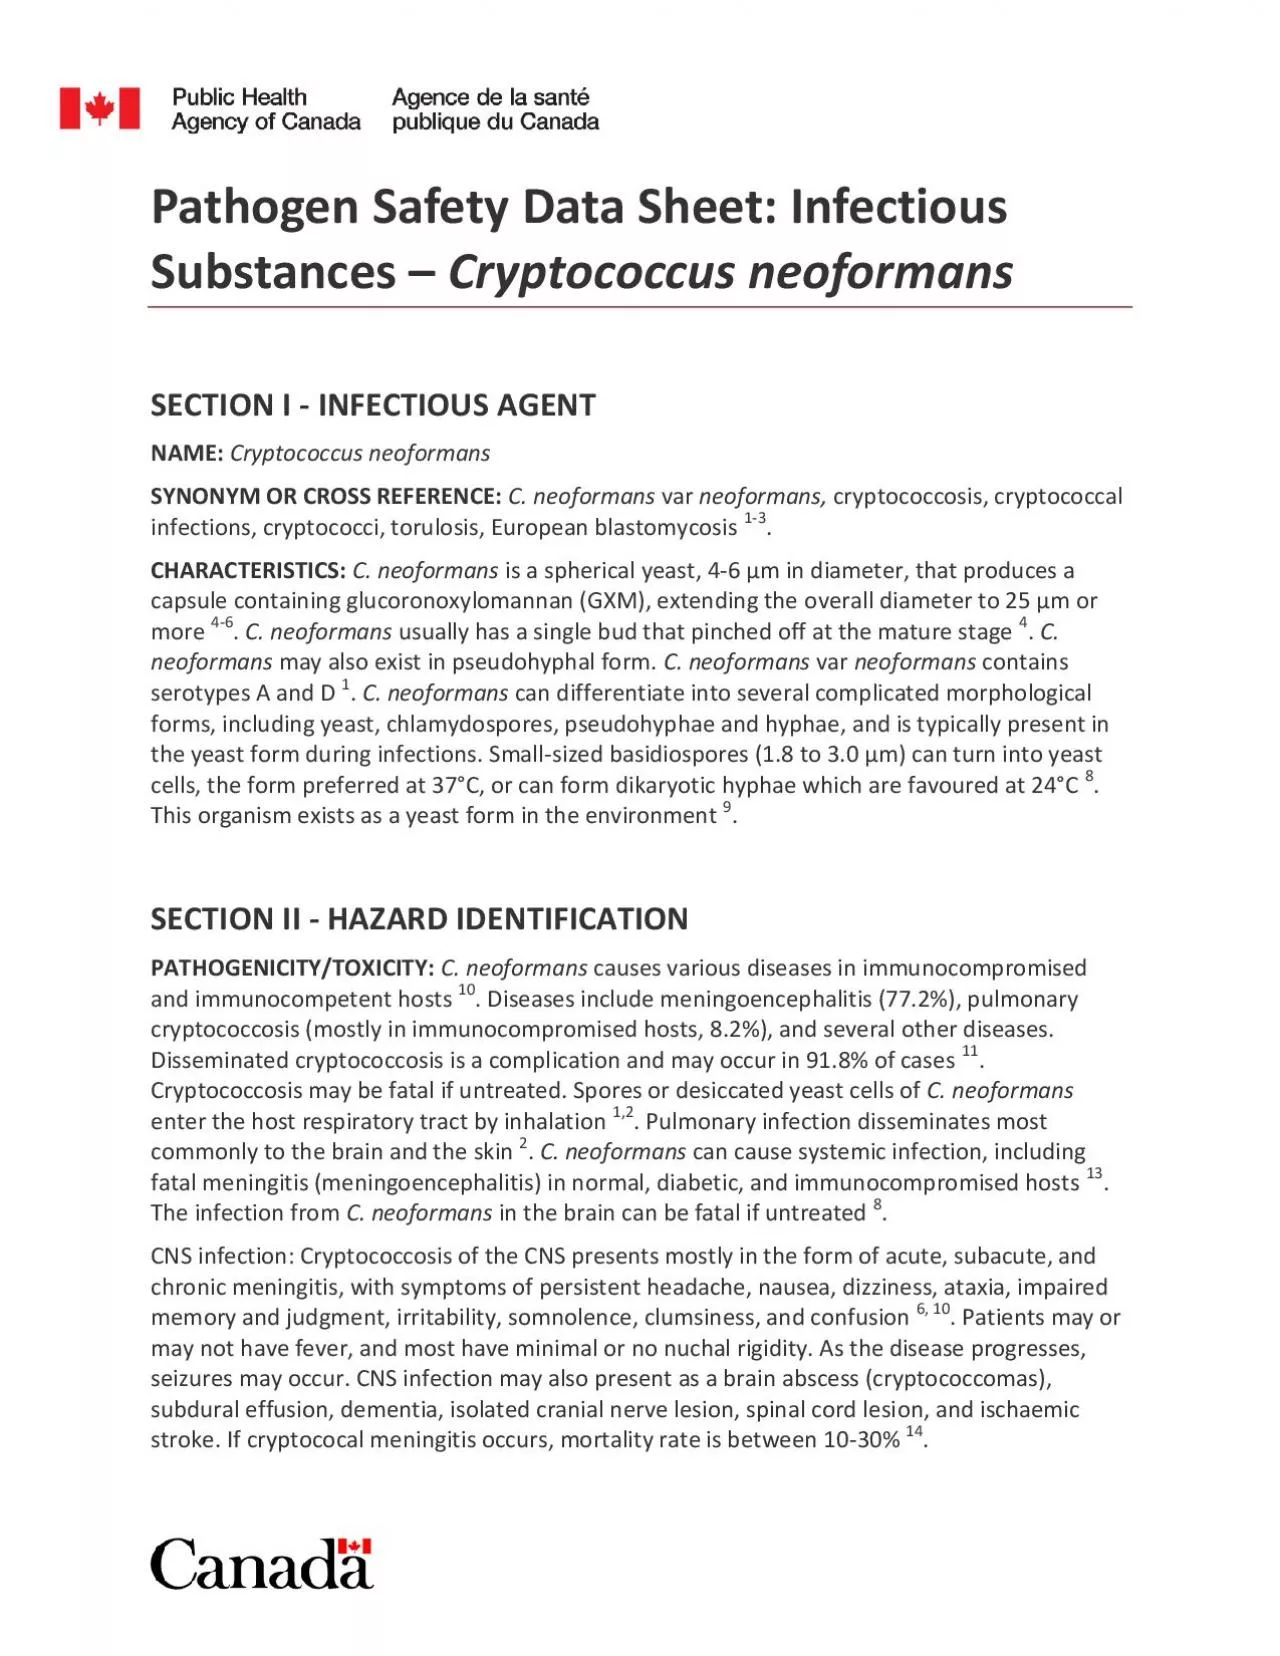 Pathogen Safety Data Sheet Infectious